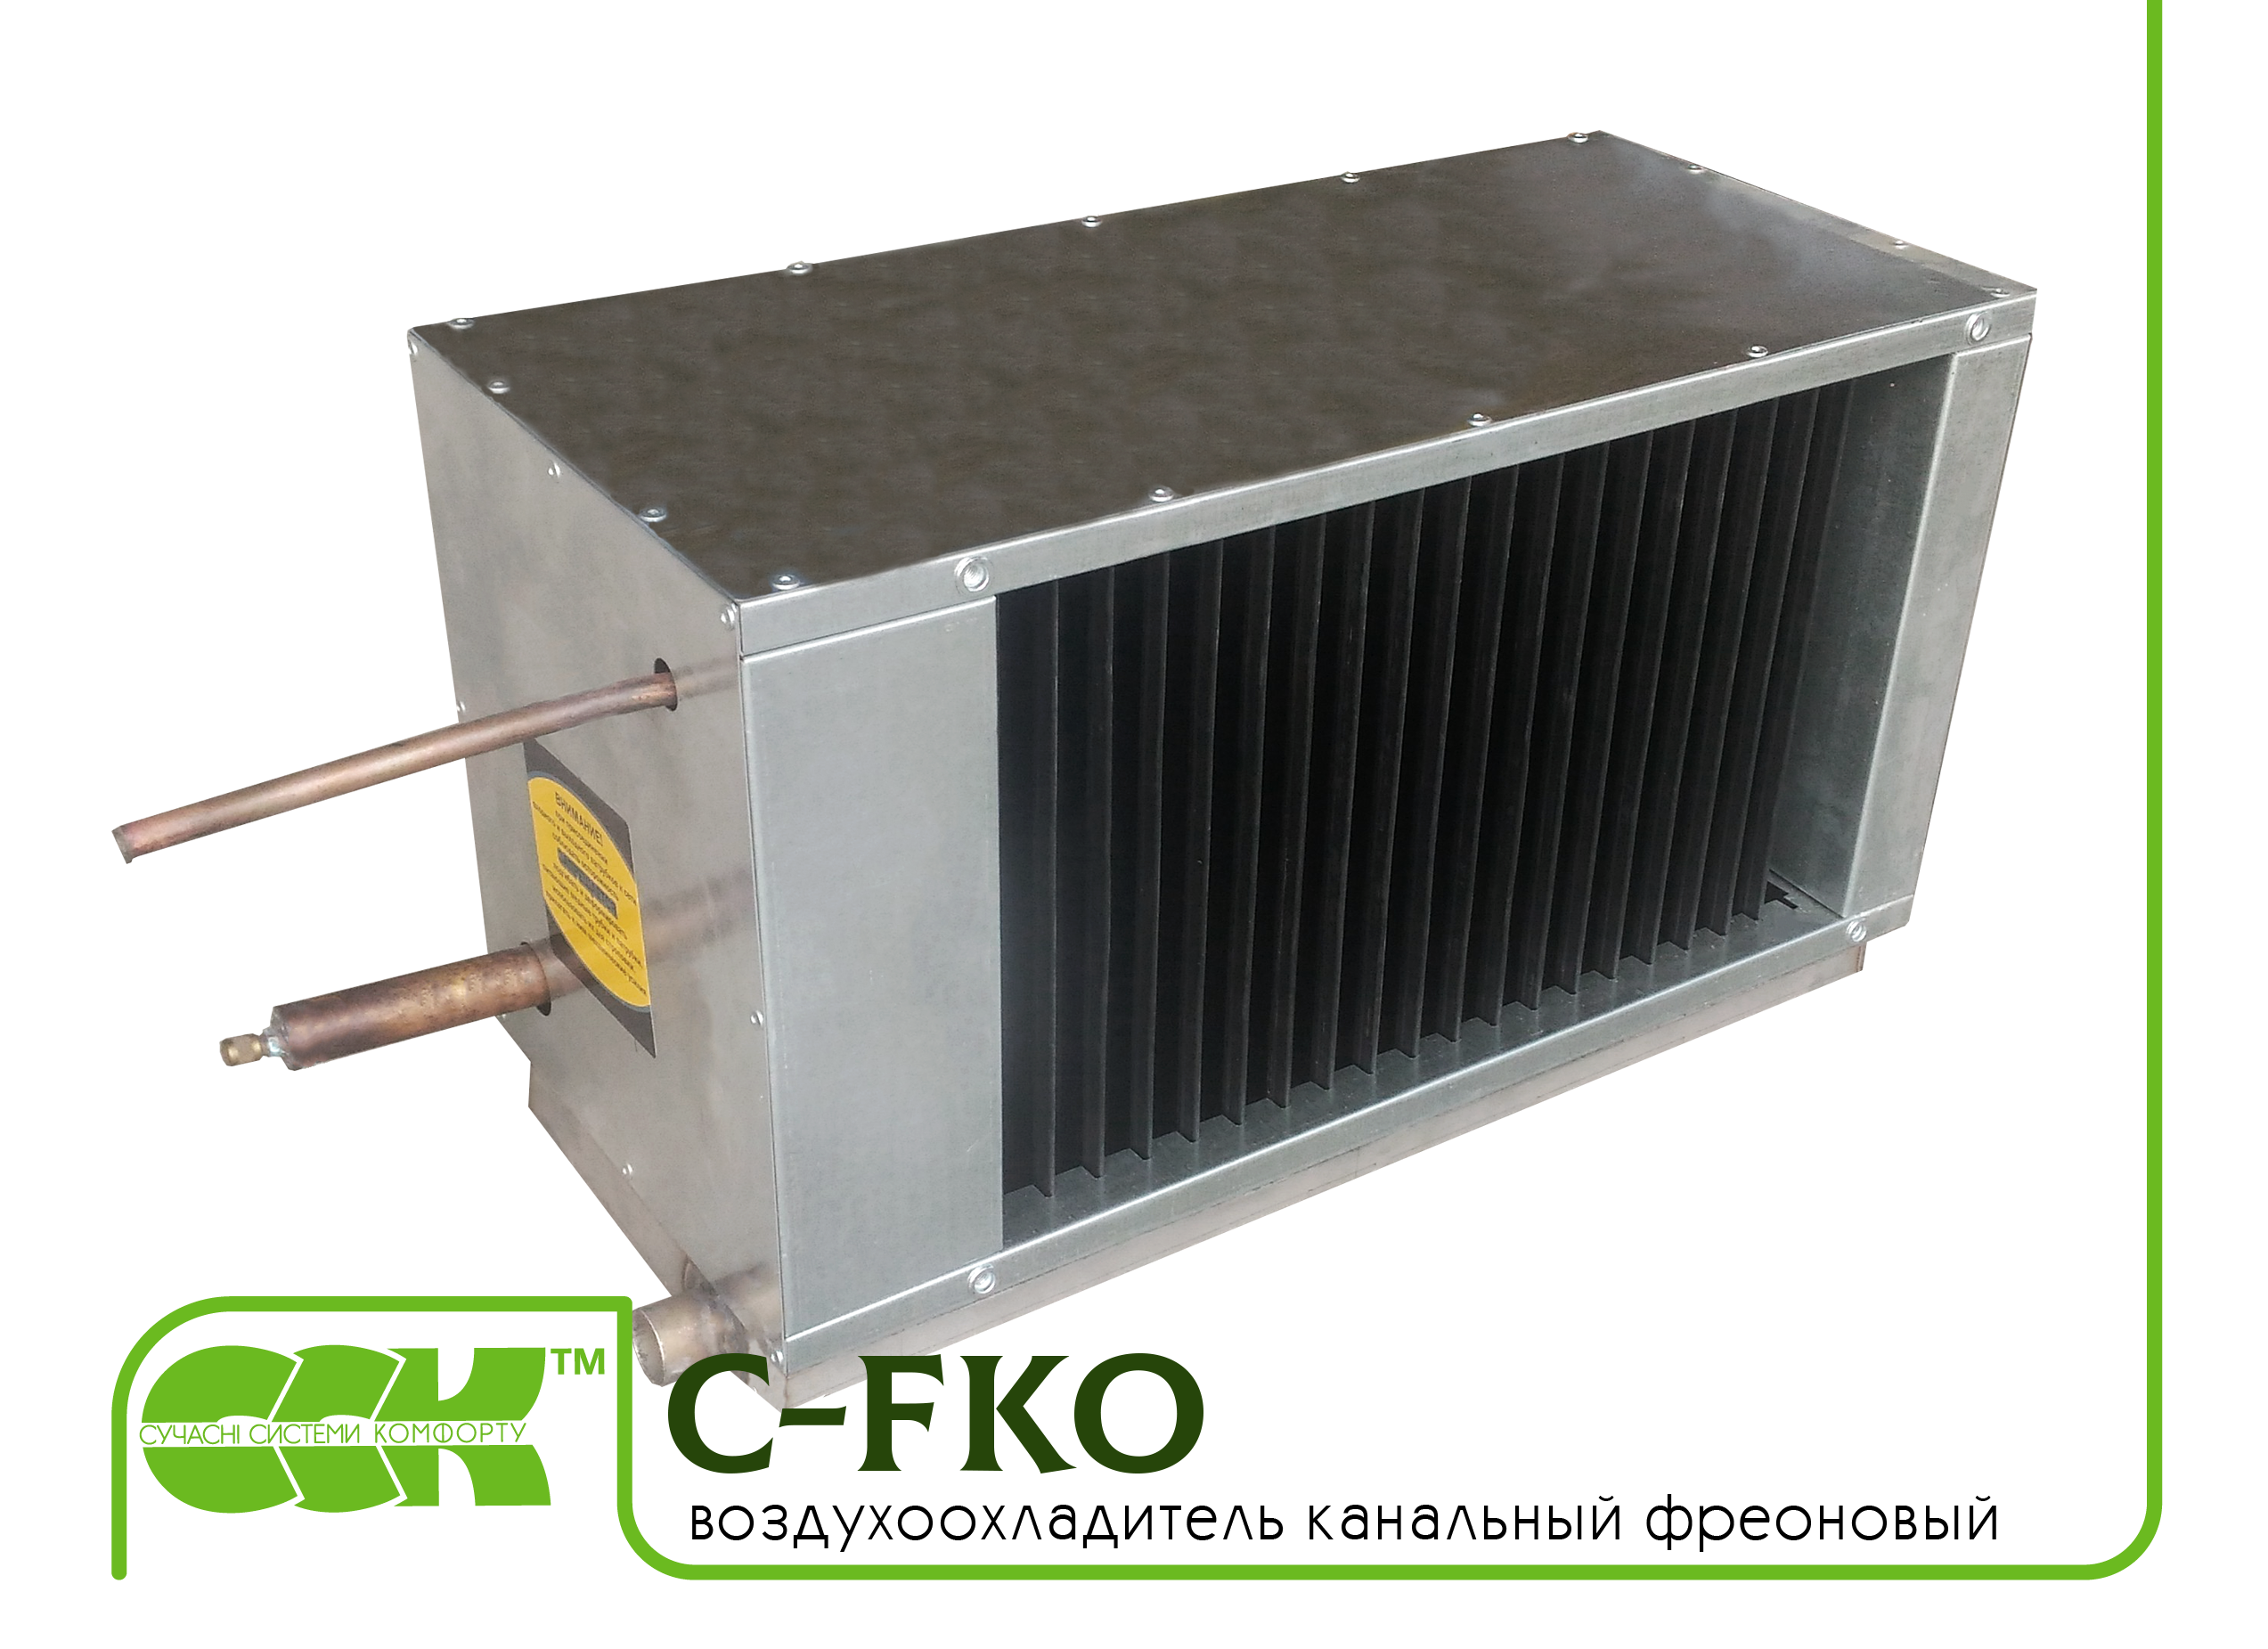 Фреоновый воздухоохладитель канальный C-FKO-80-50